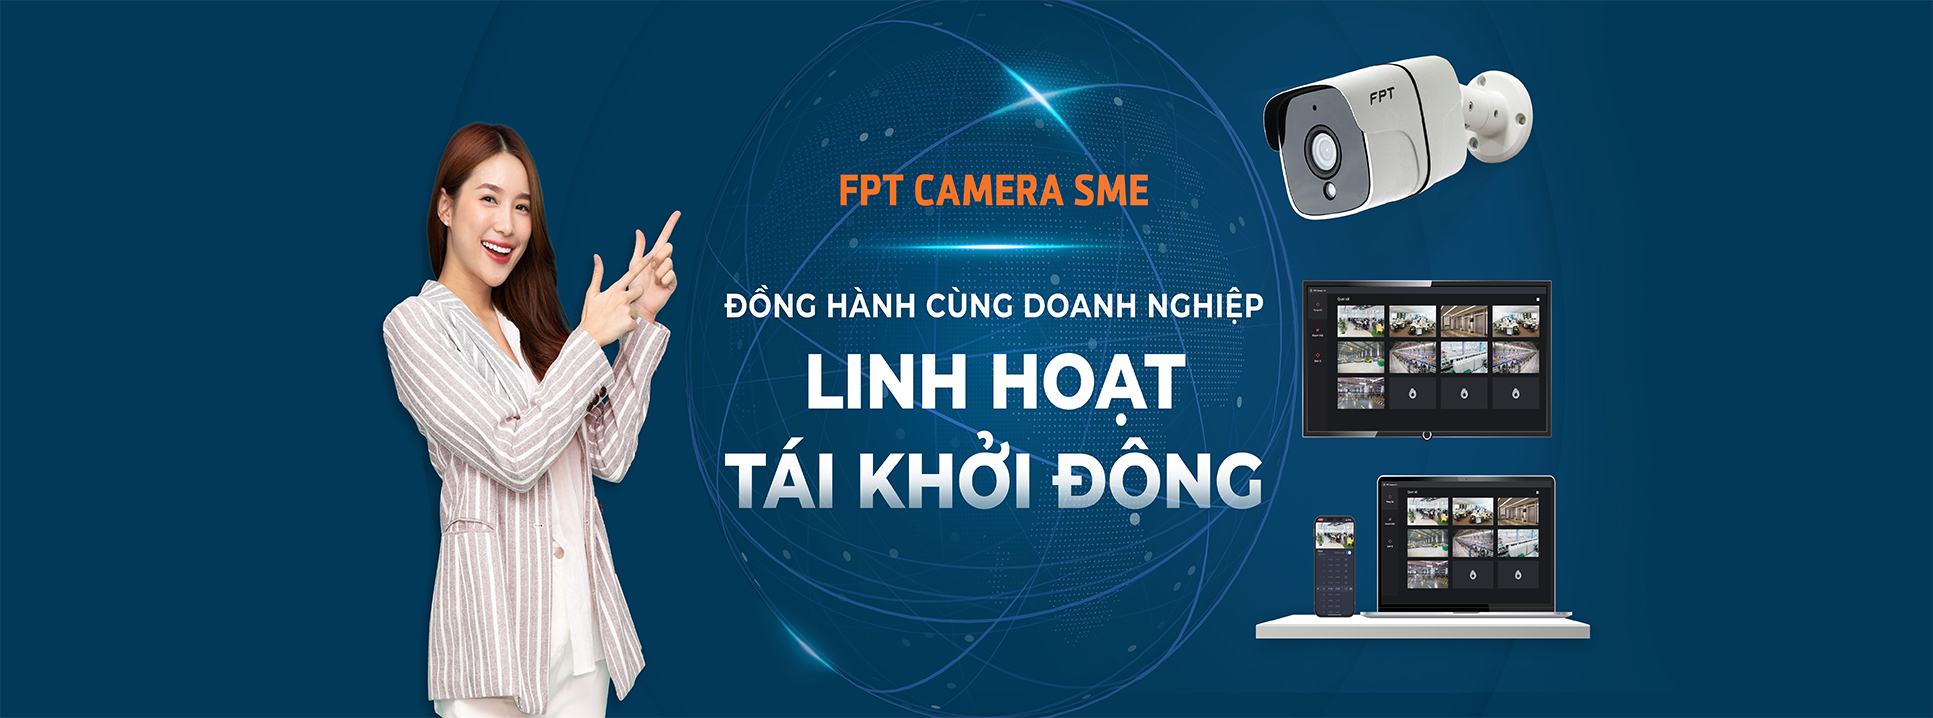 Báo giá lắp Camera FPT giám sát chính hãng, giá rẻ nhất hiện nay